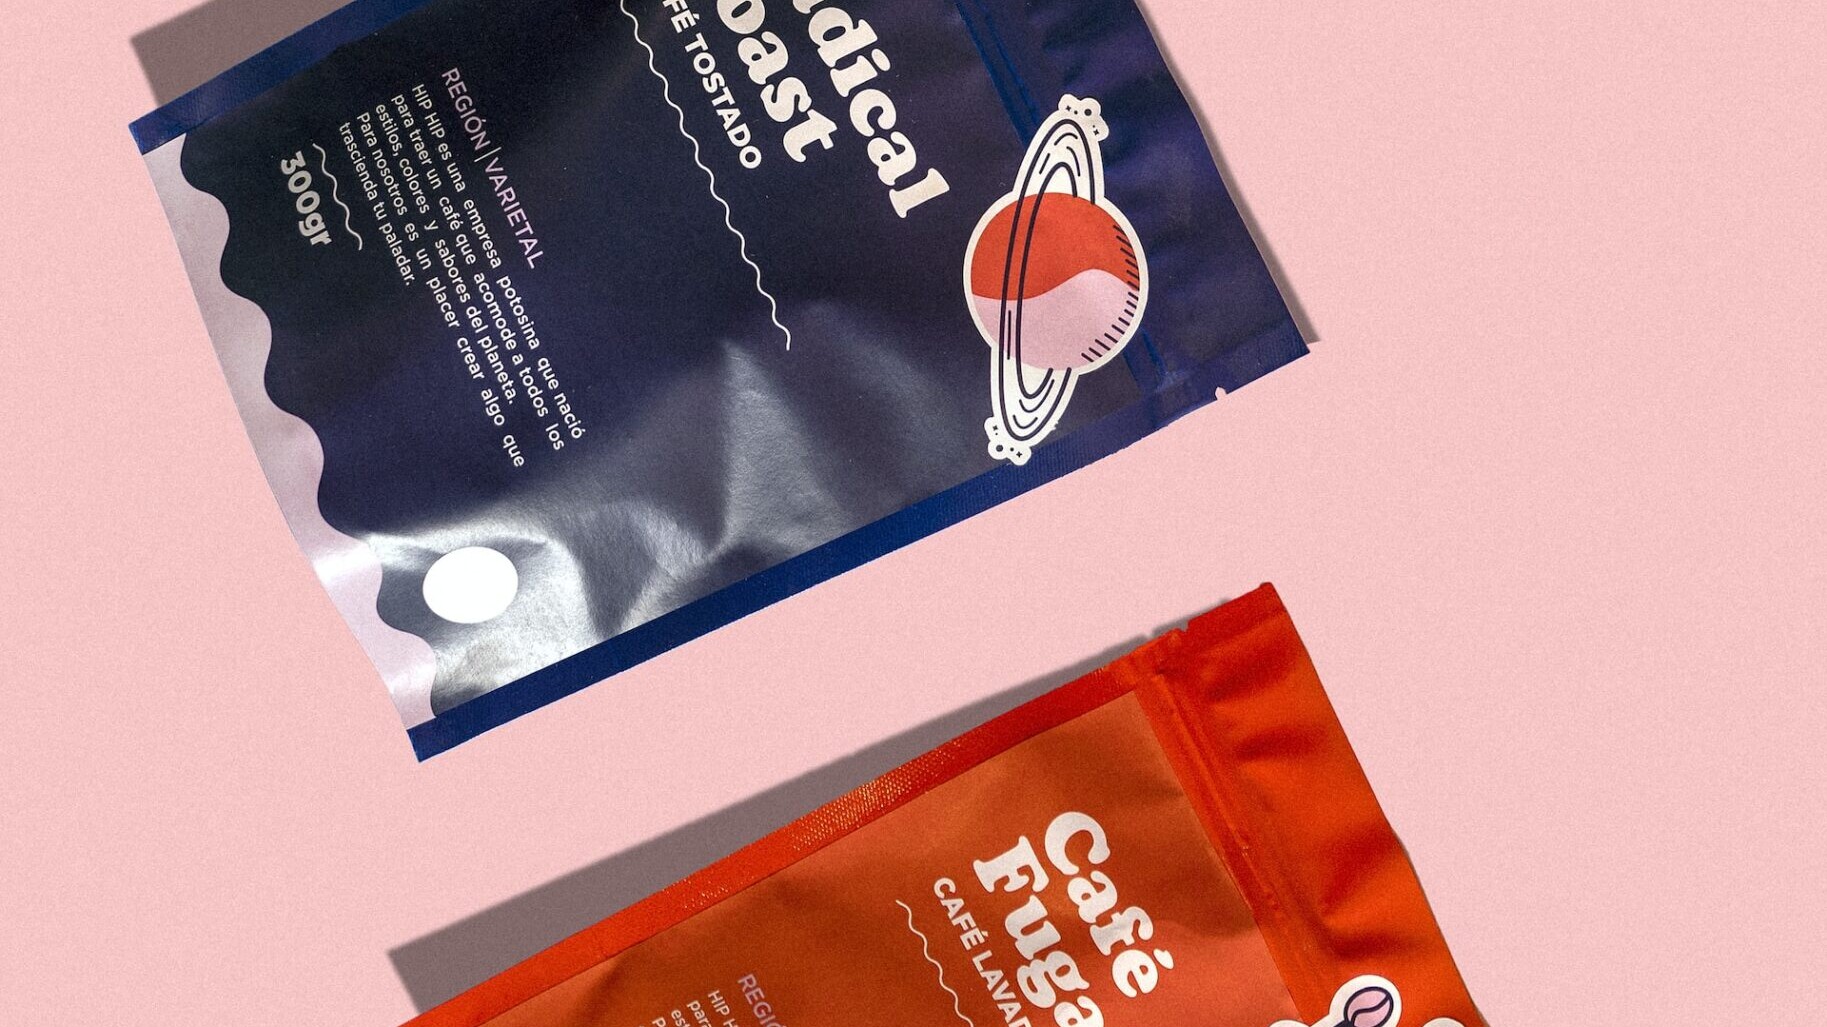 Visual Branding of coffee packaging.